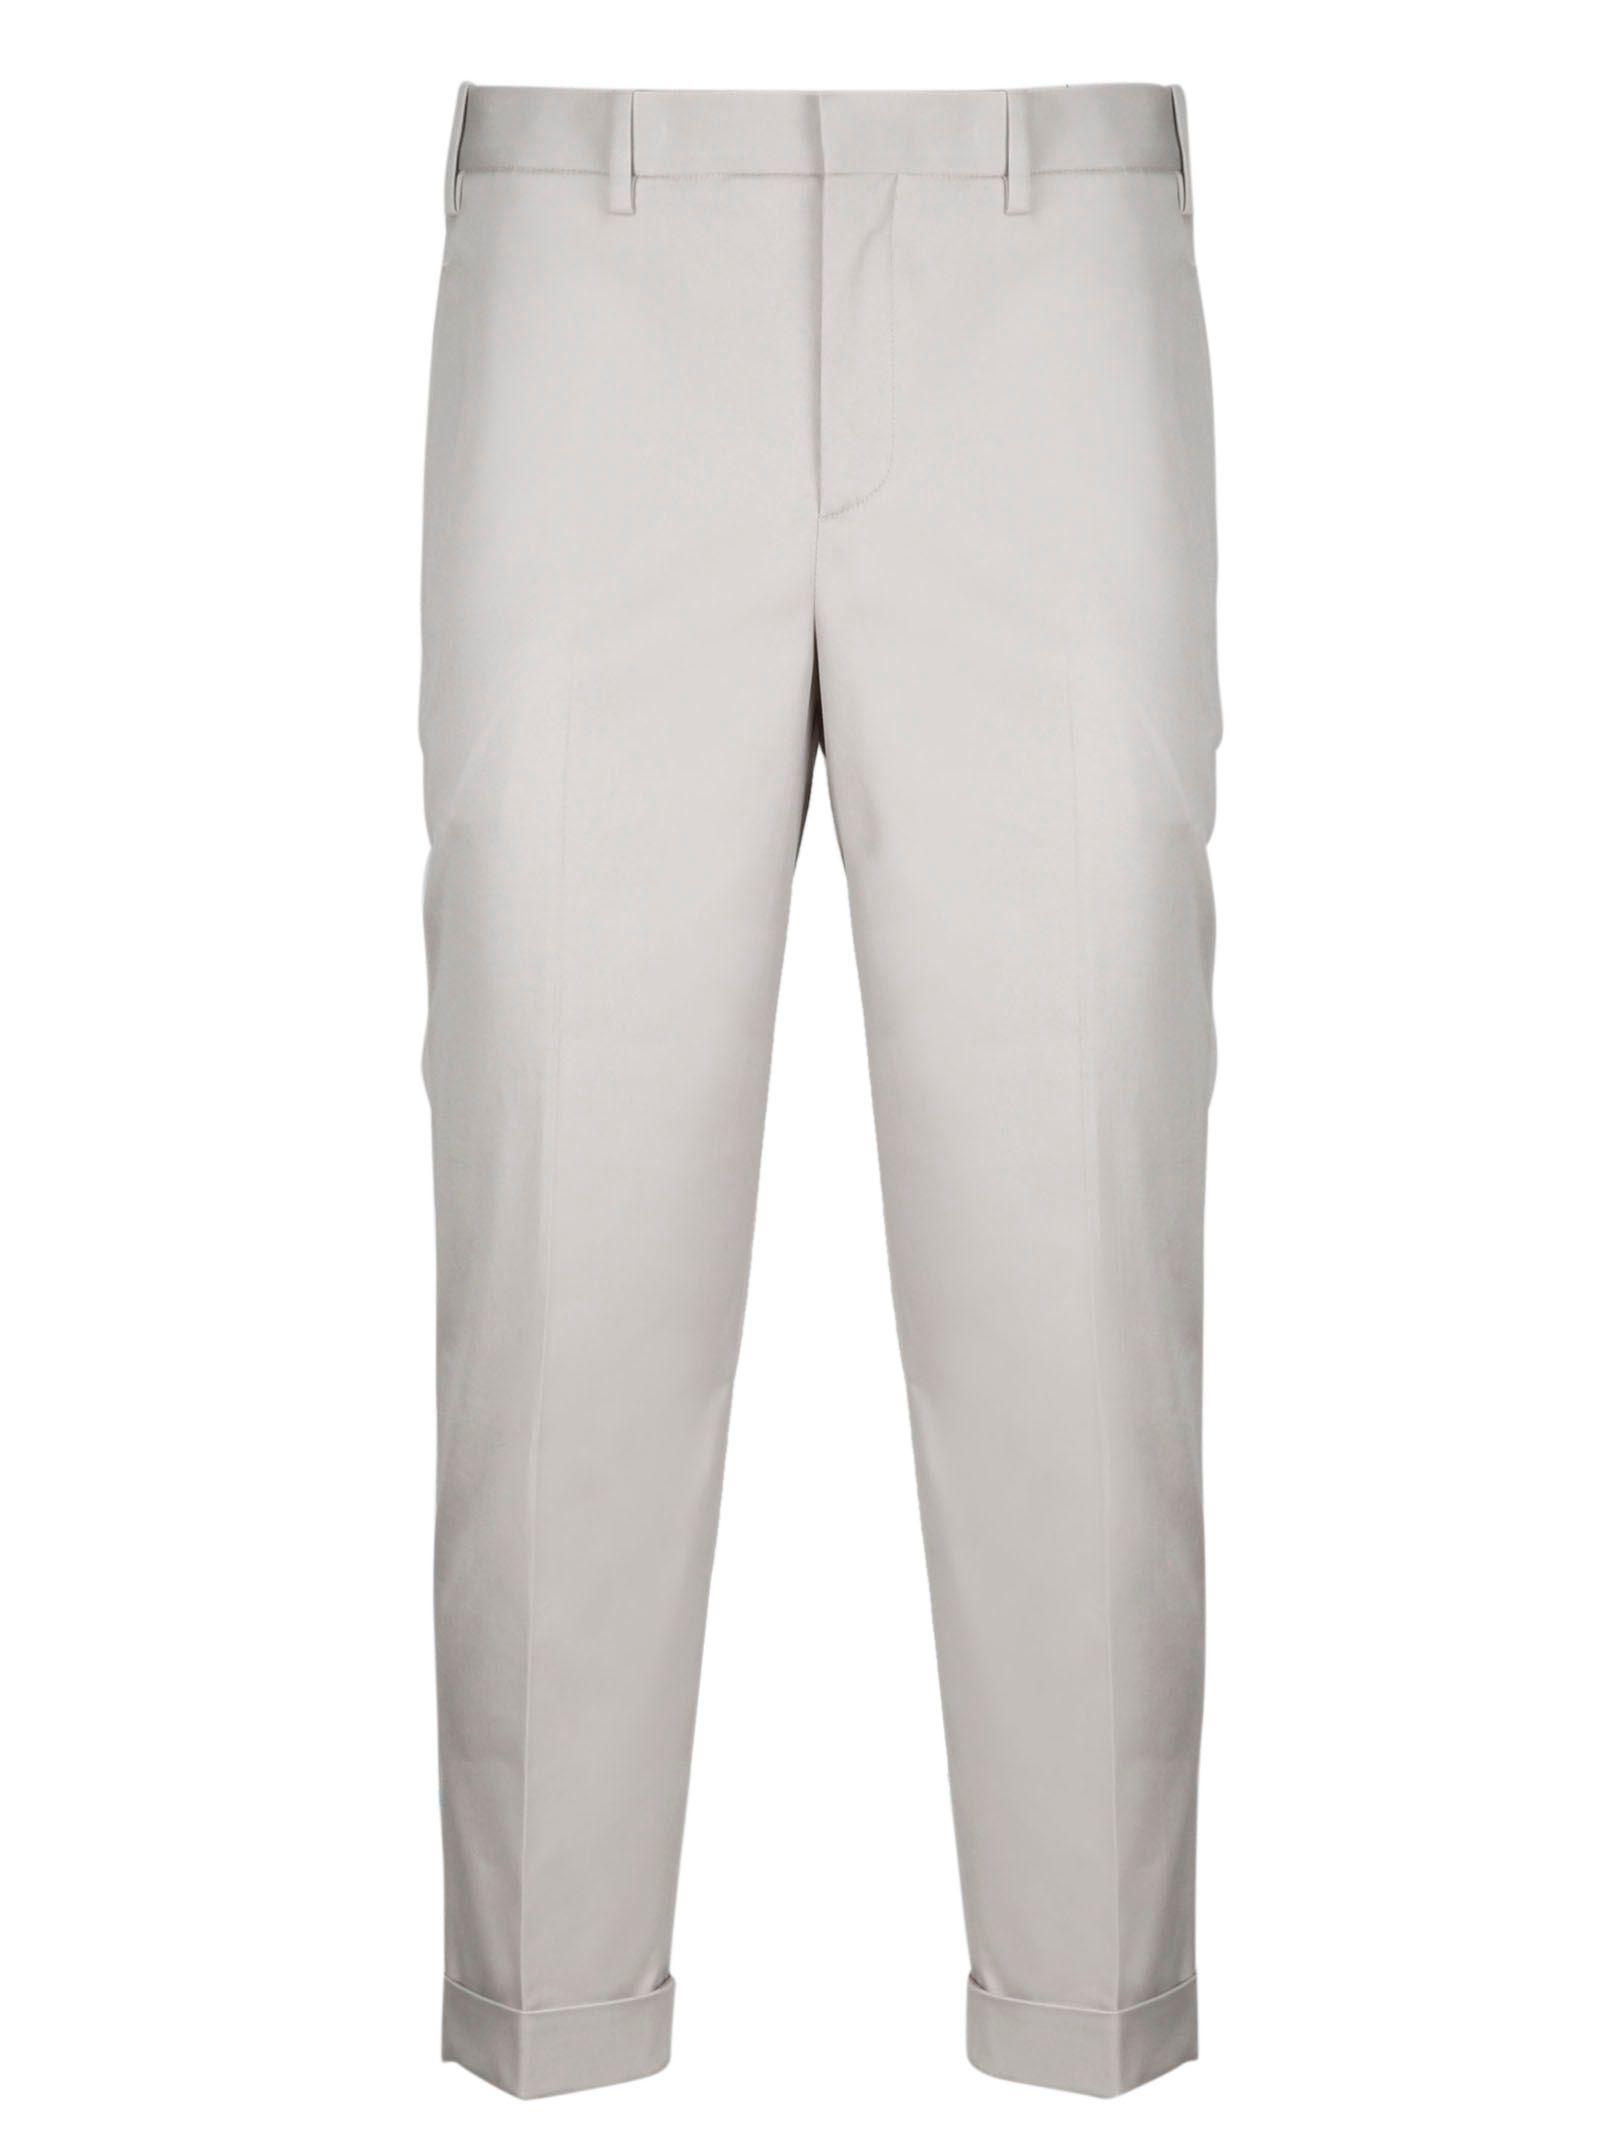 Neil Barrett Grey Cotton Pants in Gray for Men - Lyst